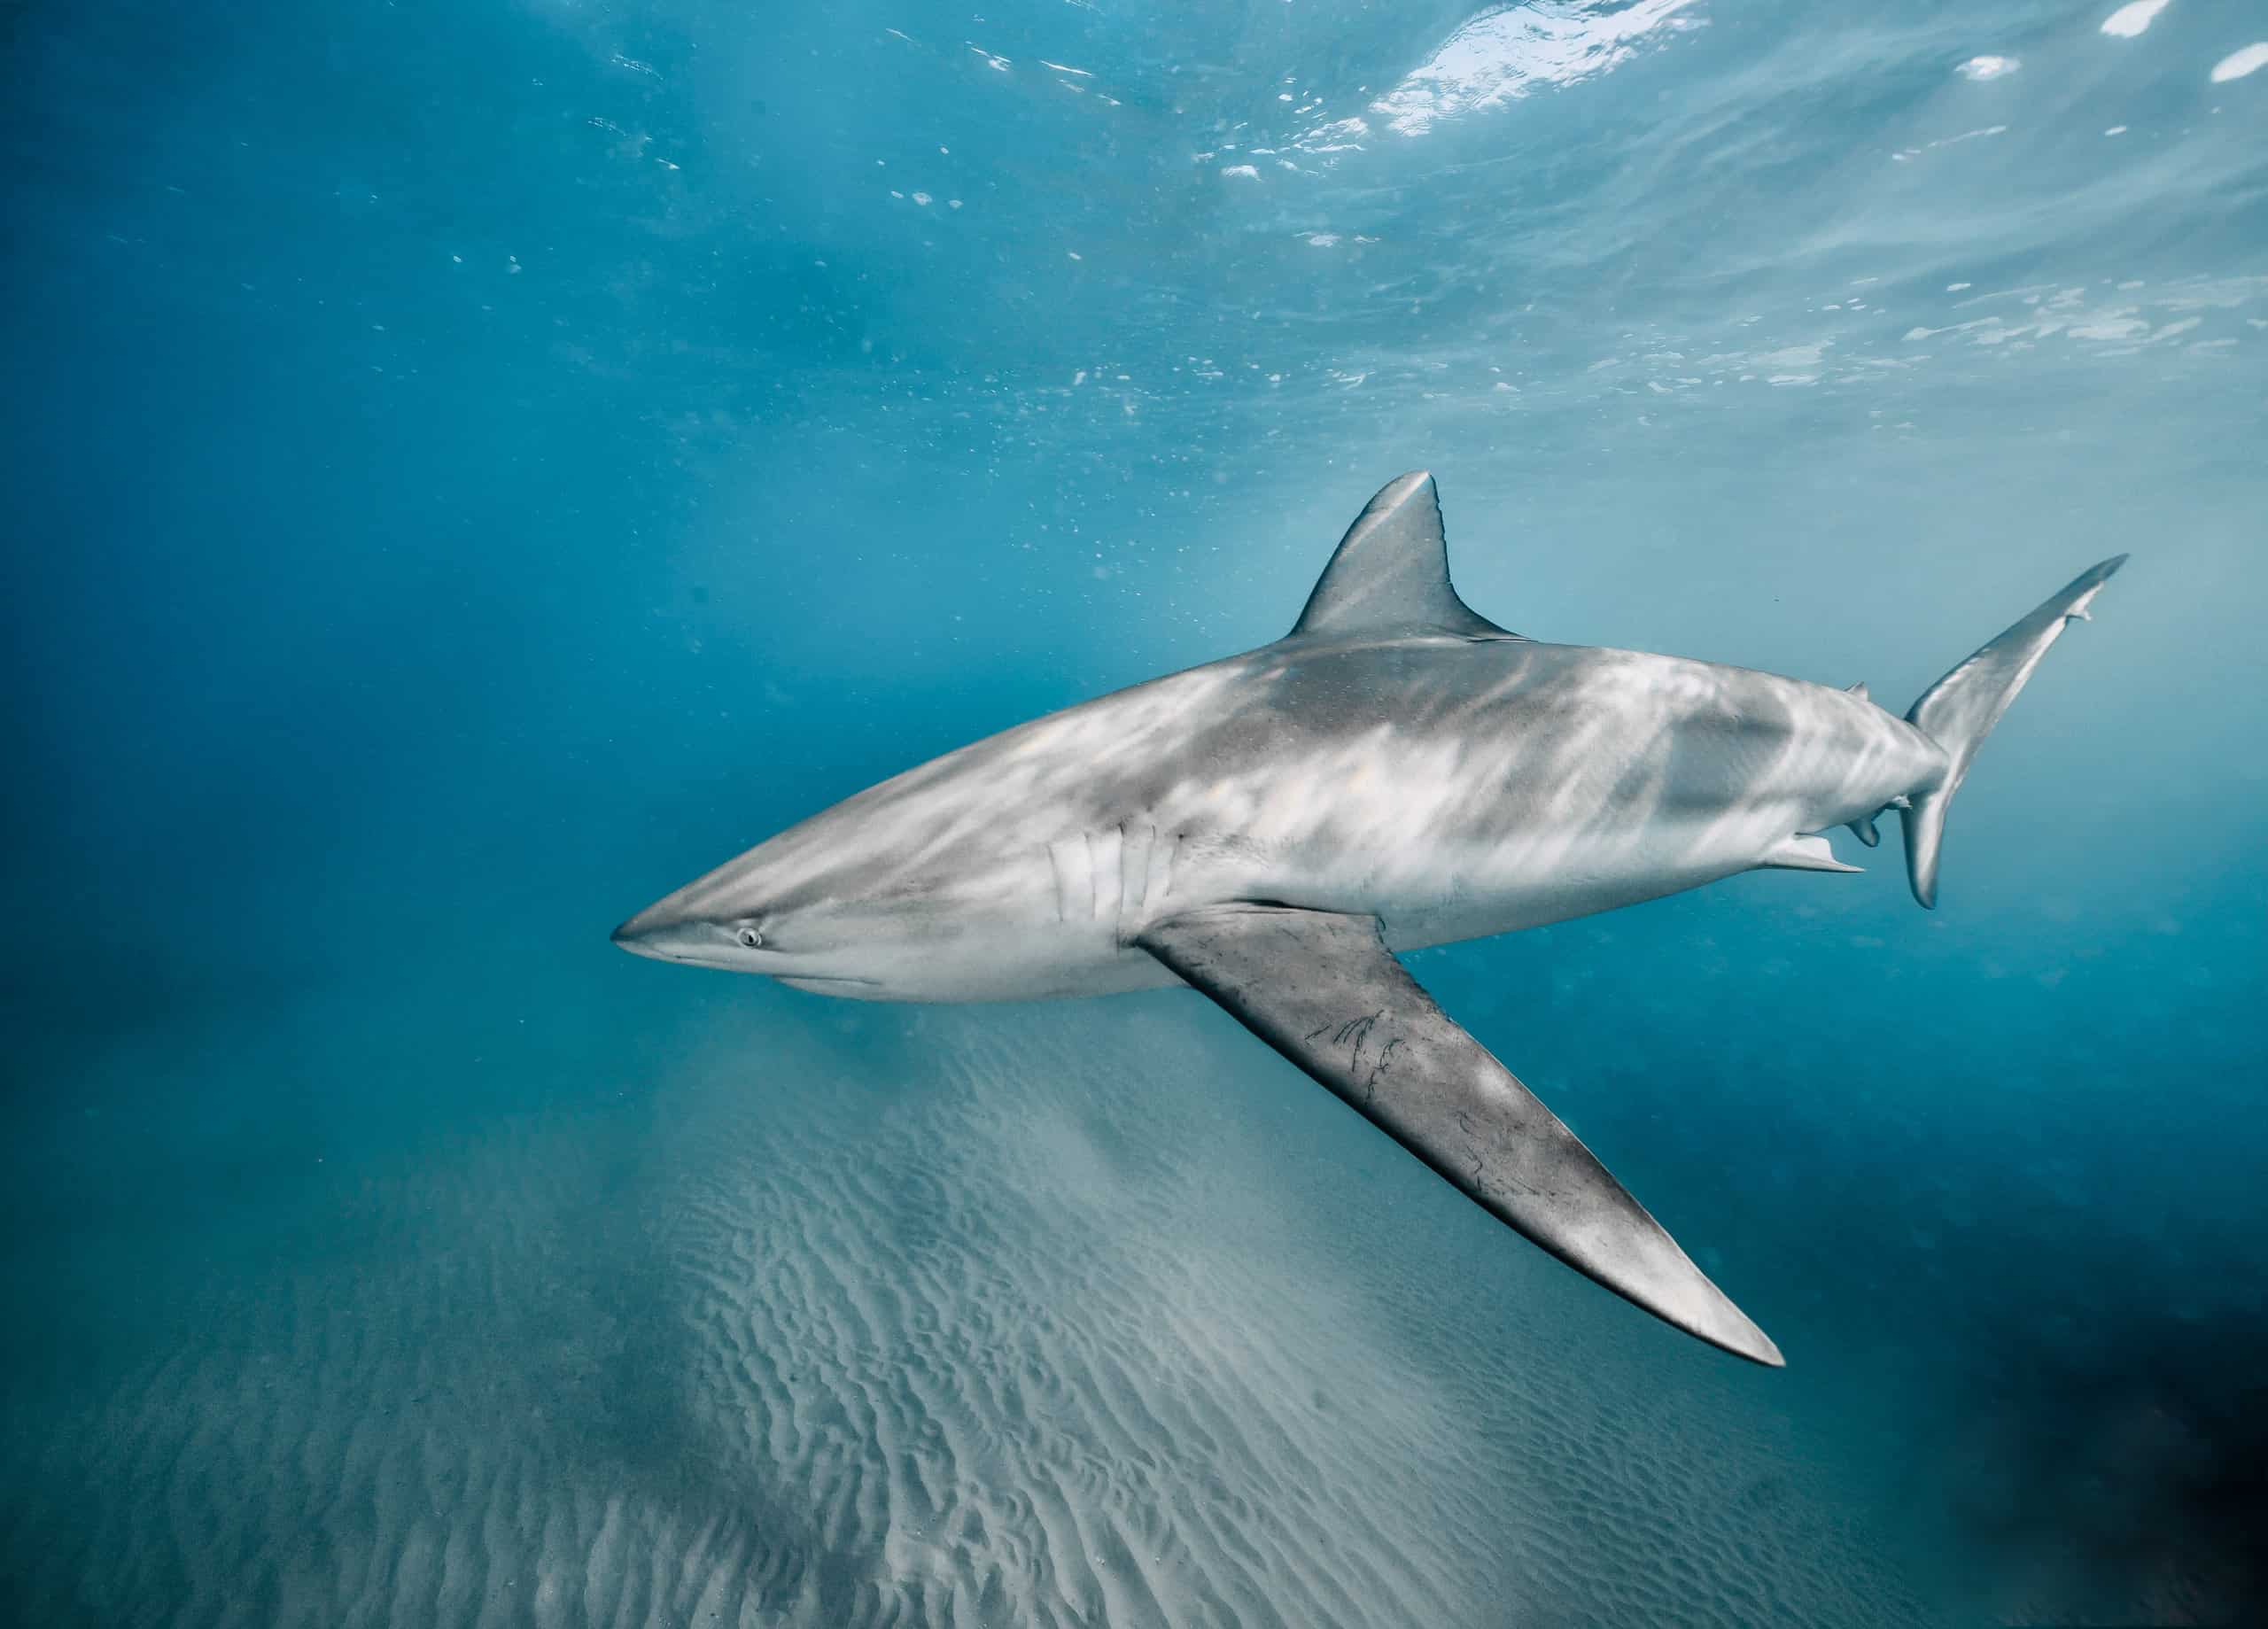 mediterranean sea sharks